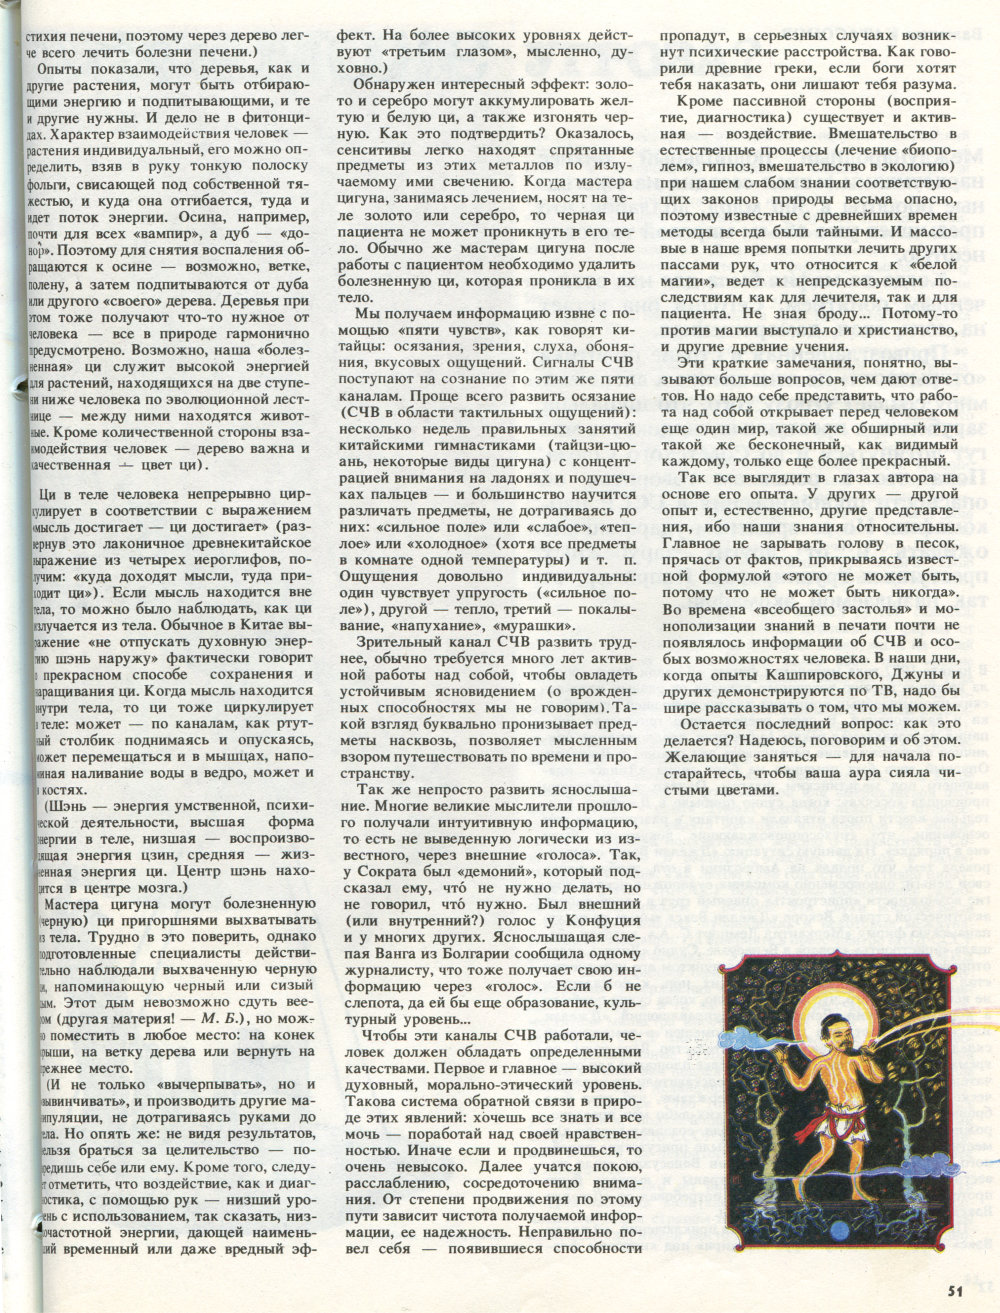 Свет видимый немногим. М.М. Богачихин. Свет. Природа и человек, 1990, №2, с.48-51. Фотокопия №4